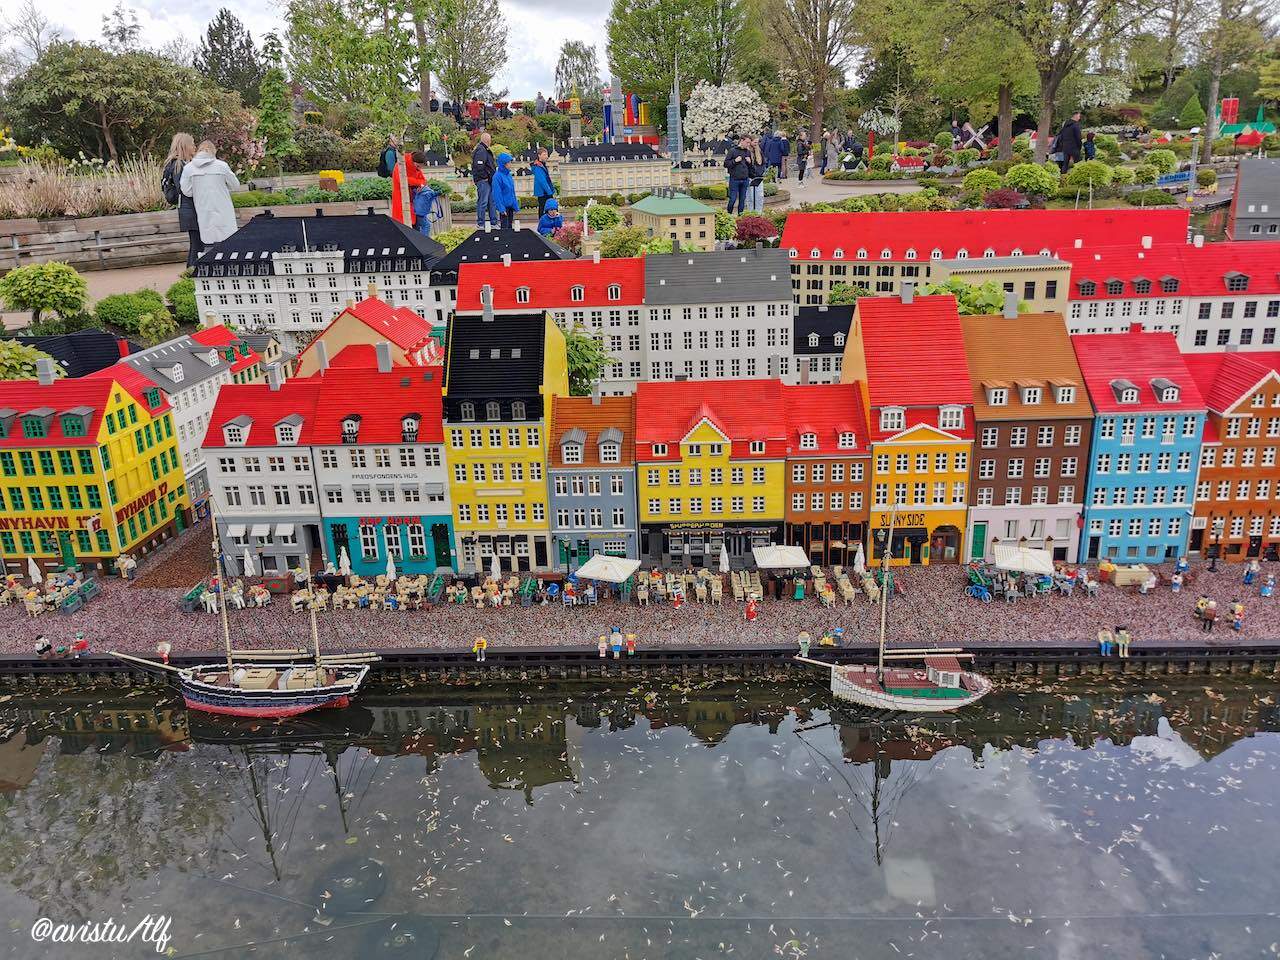 El Puerto de Nyhavn en Copenhague reproducido en Legoland Billund, Dinamarca [(c) Foto: @avistu]